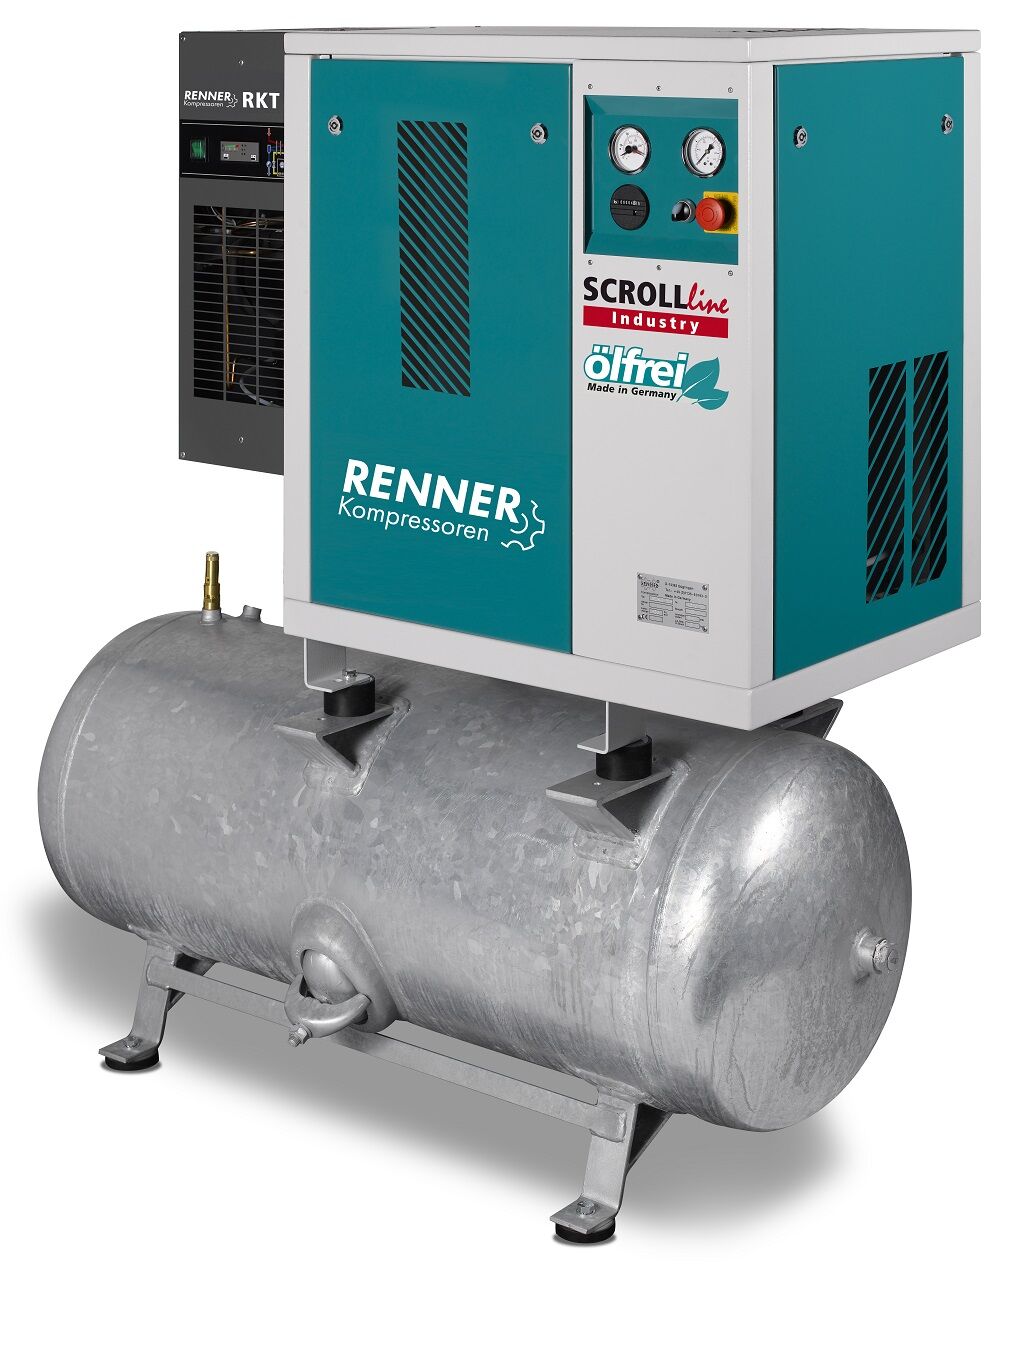 RENNER-Kompressor Industry ölfrei - SLDK-I 2,2 auf 90 Liter Druckbehälter mit Kältetrockner